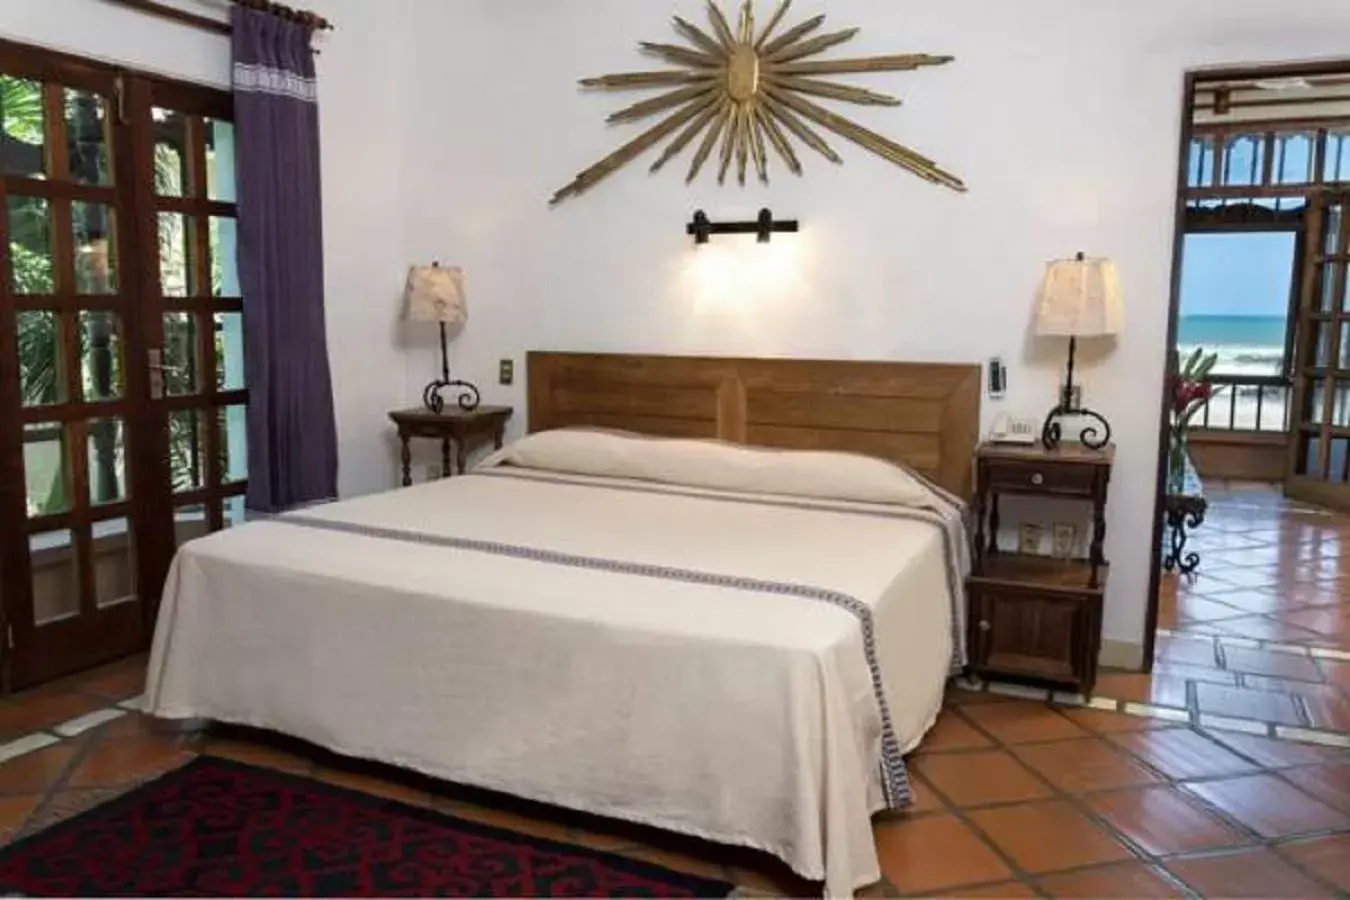 Bed in Hotel Santa Fe